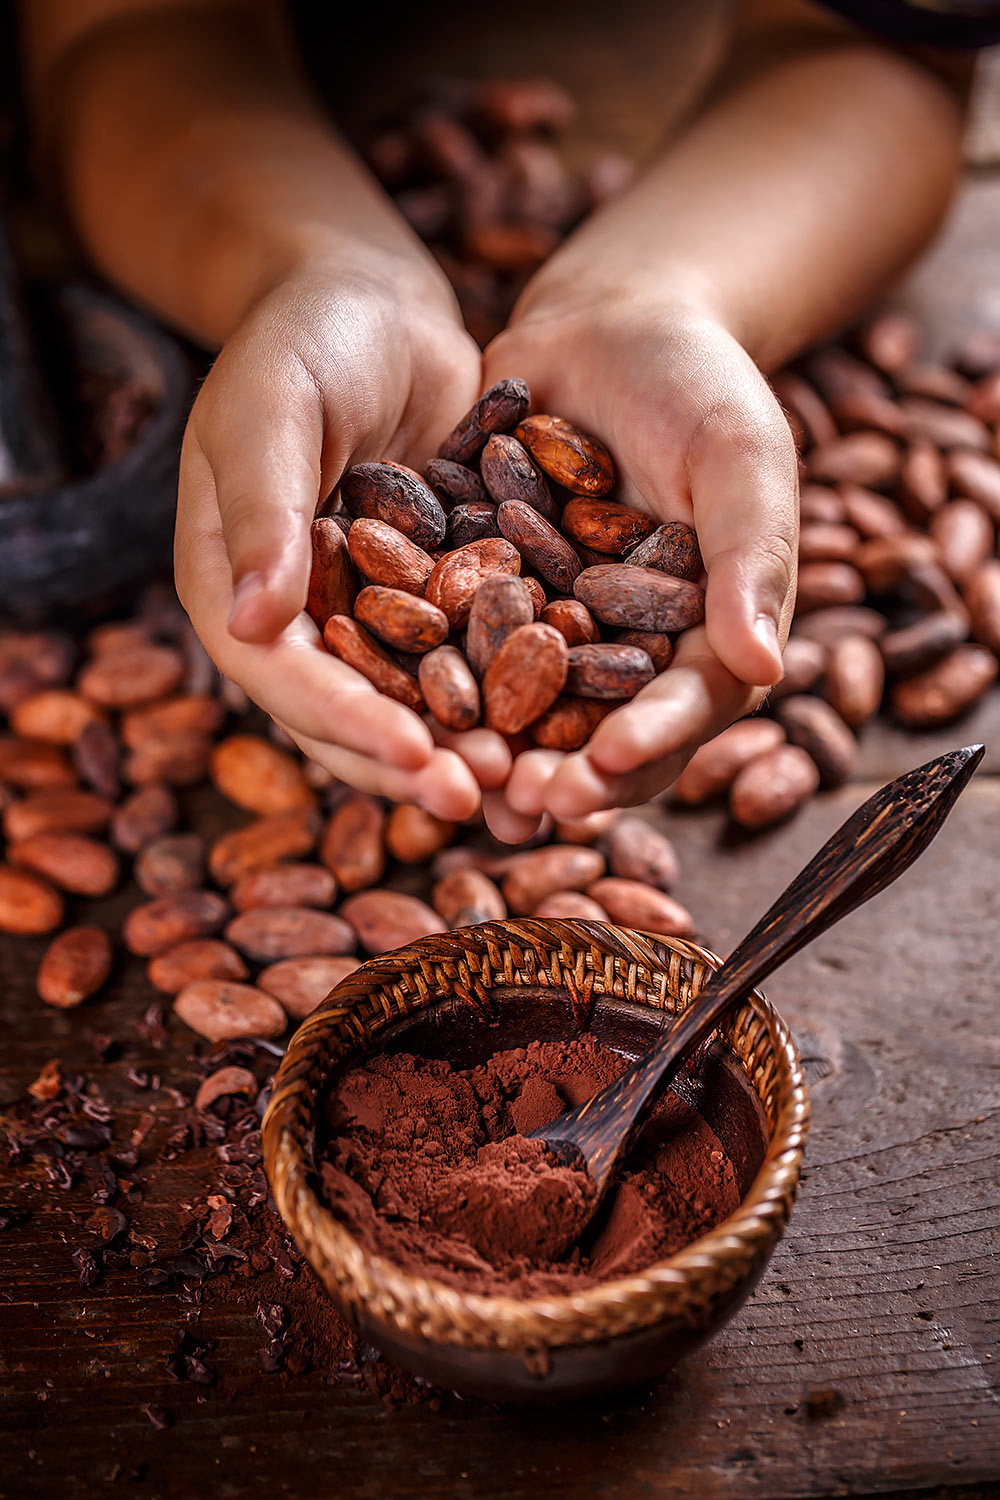 Czekolady firmy Cocoa wytwarzane są z ekologicznych nieprażonych ziaren kakaowca z dodatkiem ekologicznego cukru z palmy kokosowej.